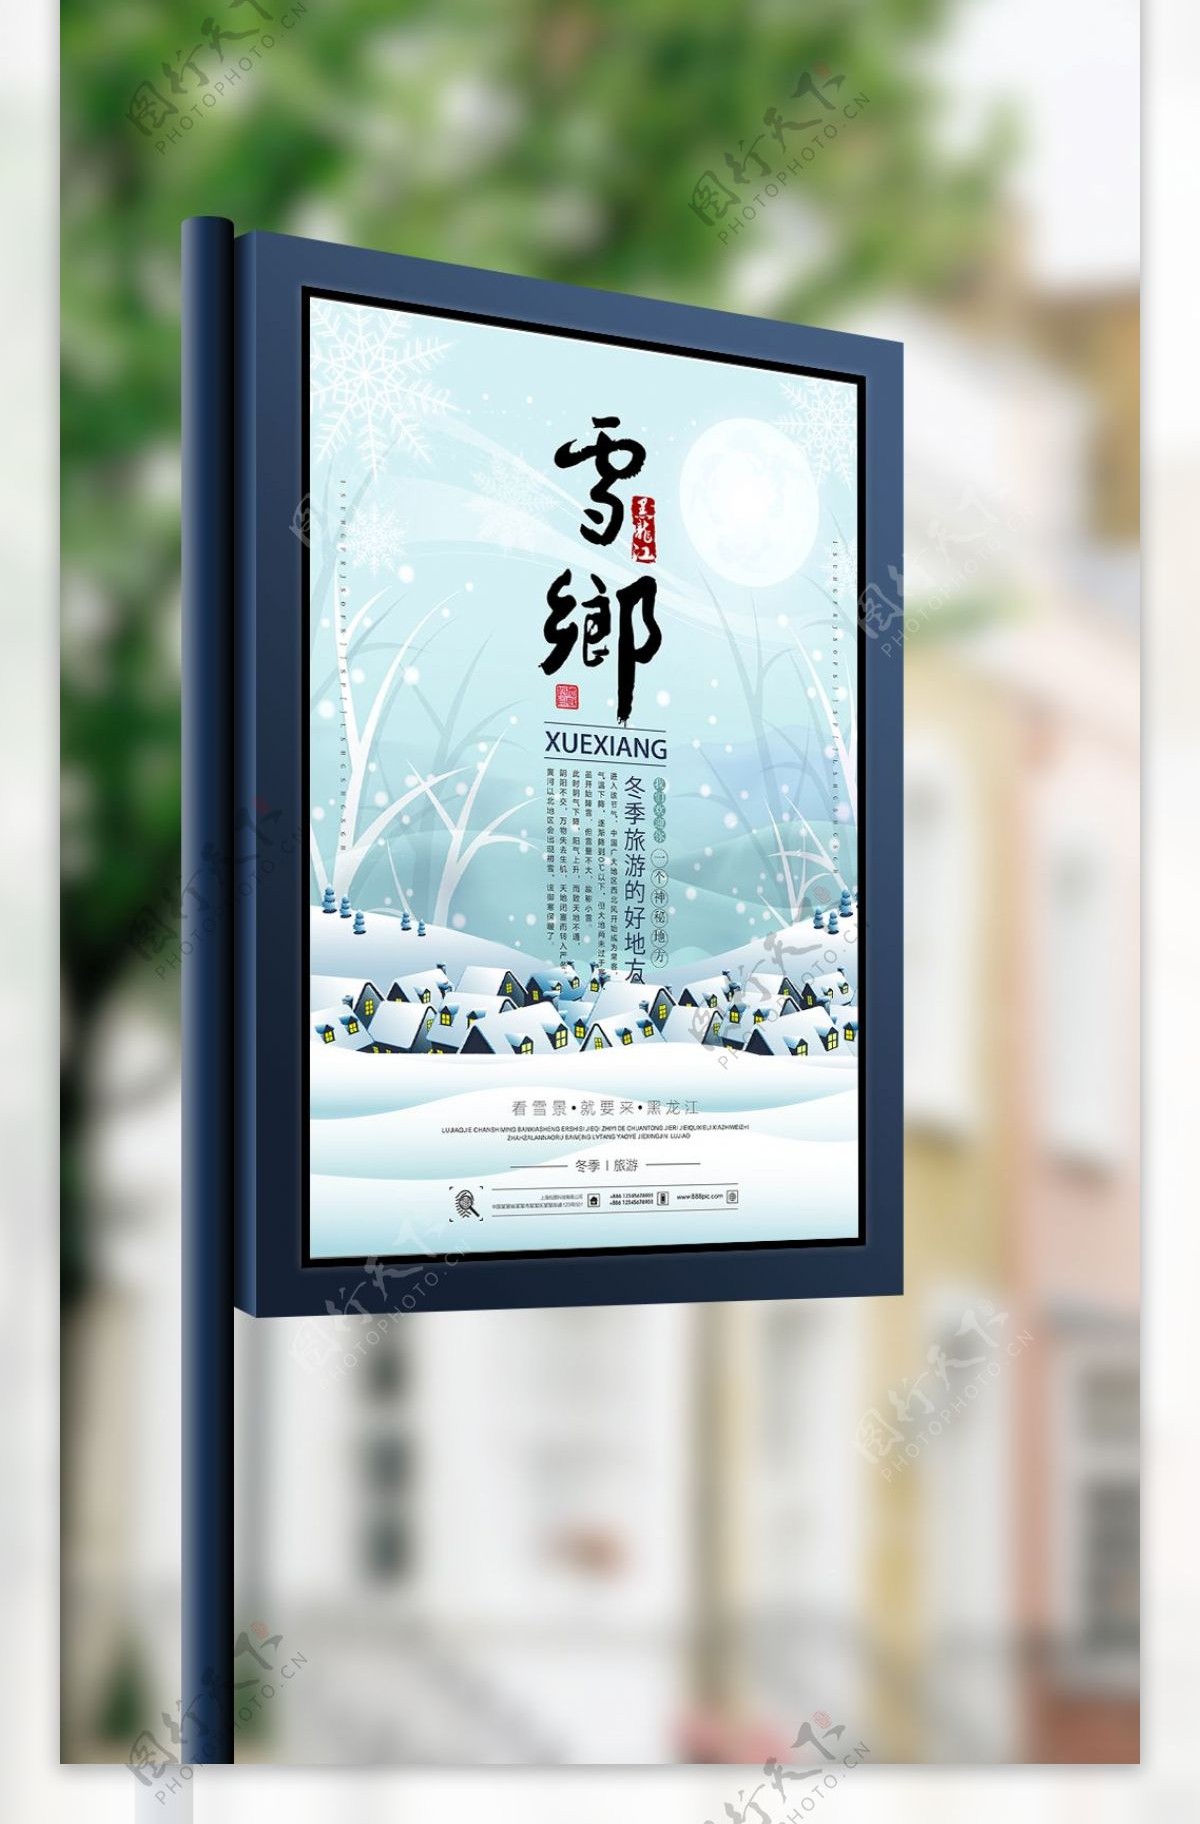 黑龙江雪乡旅游海报设计